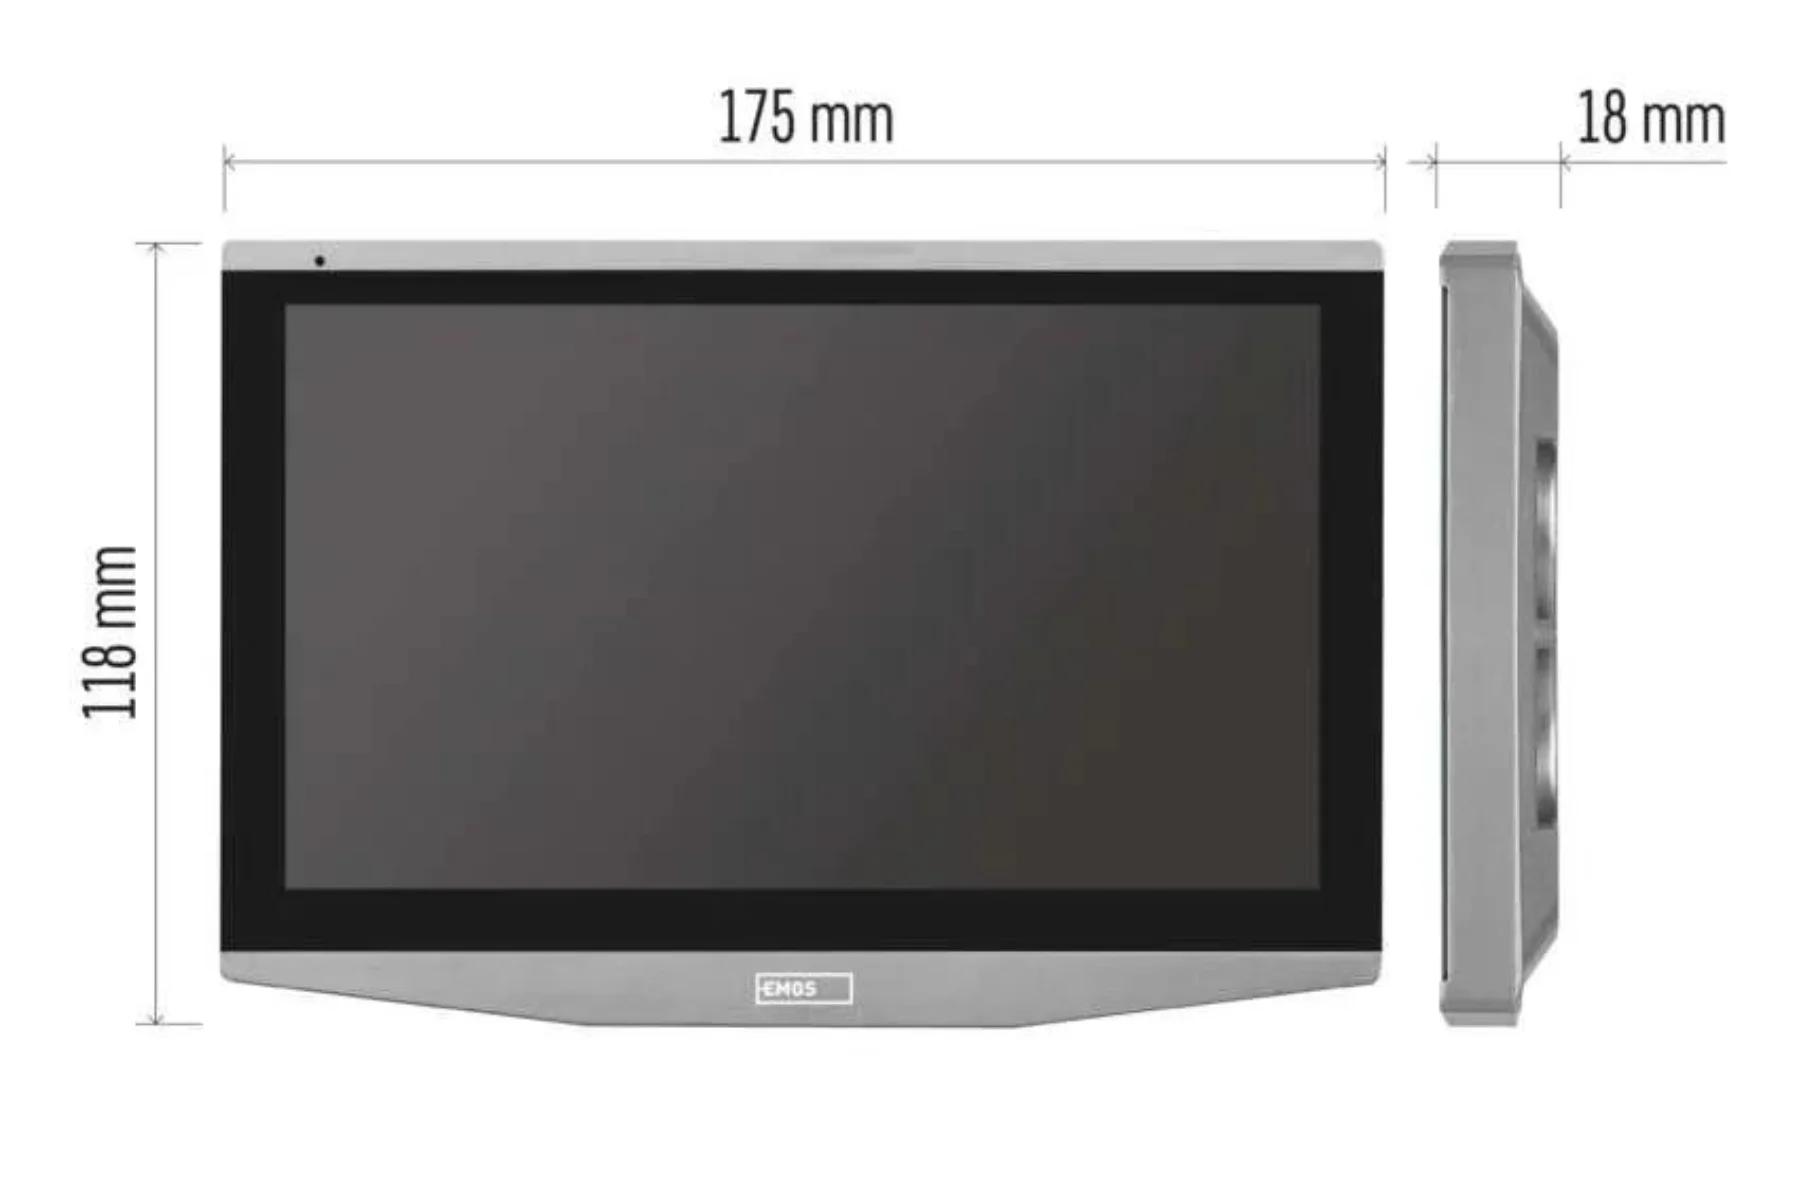 Prídavný monitor EMOS IP-700B domáceho videovrátnika IP-700A instalacia